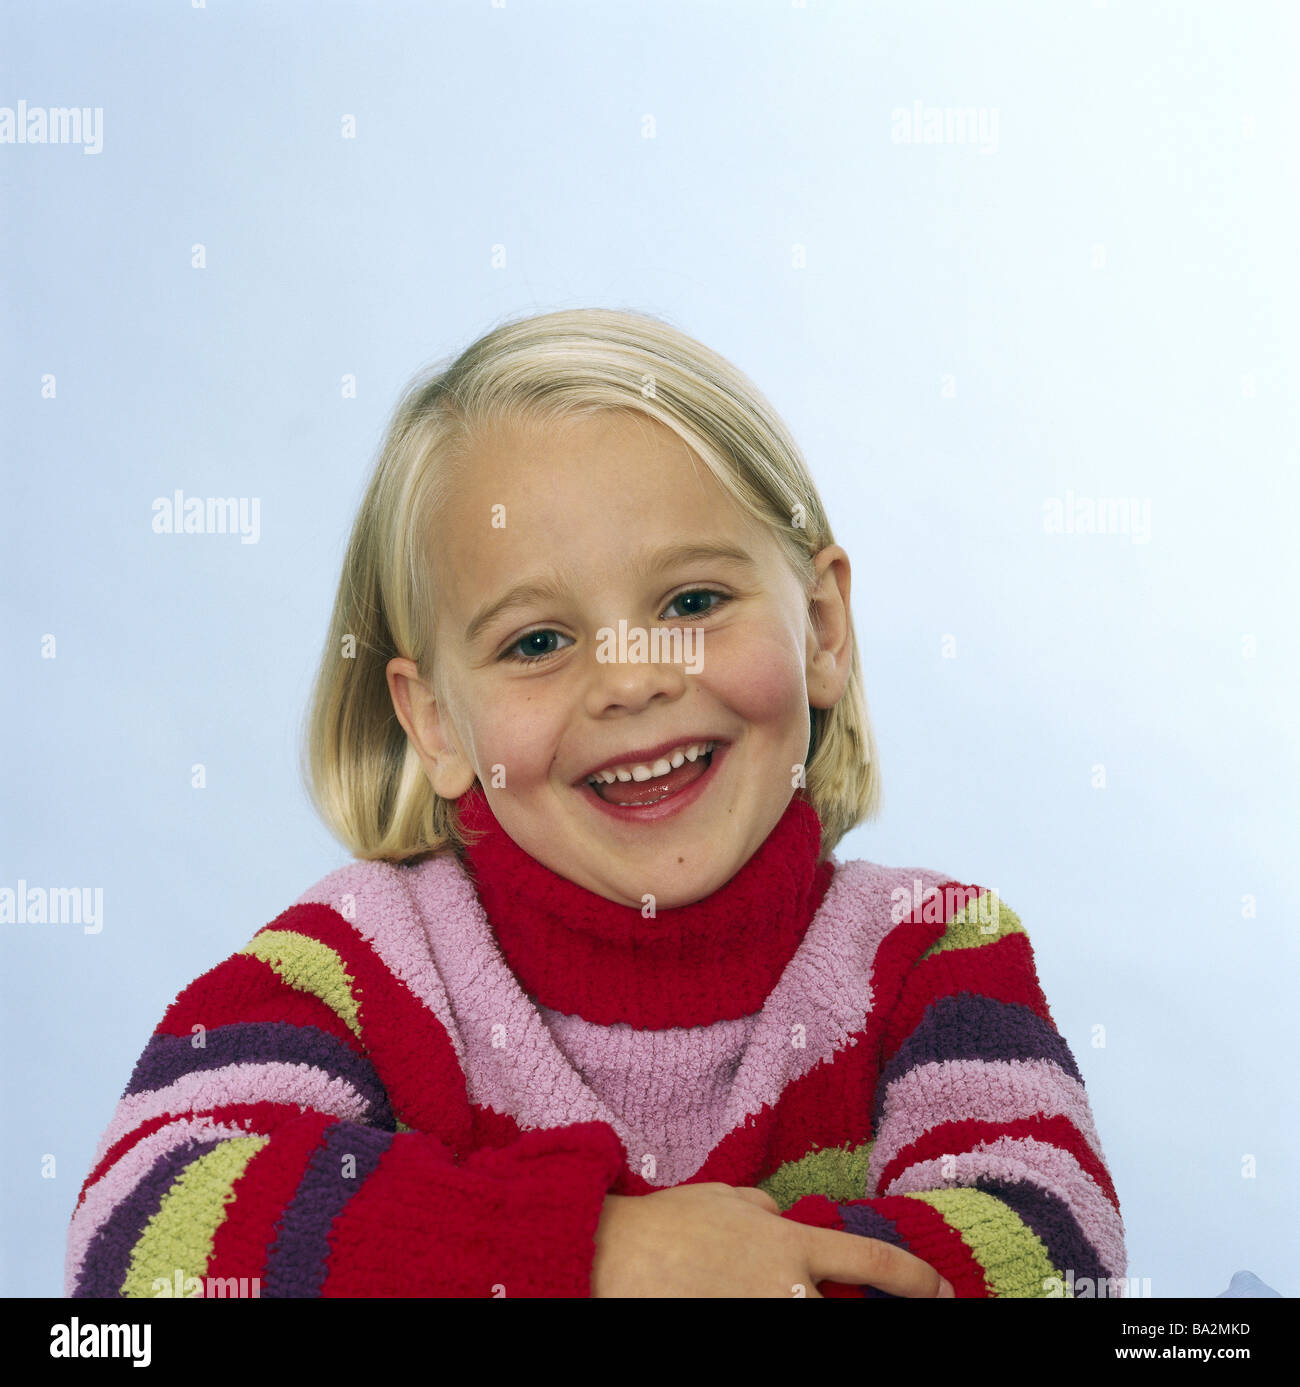 Ragazze allegramente sorriso ritratto persone serie bambino-ritratto i bambini fino a 6 anni da 5 a 7 anni lo sguardo bionda fotocamera malioni con collo alto scorrazzava Foto Stock